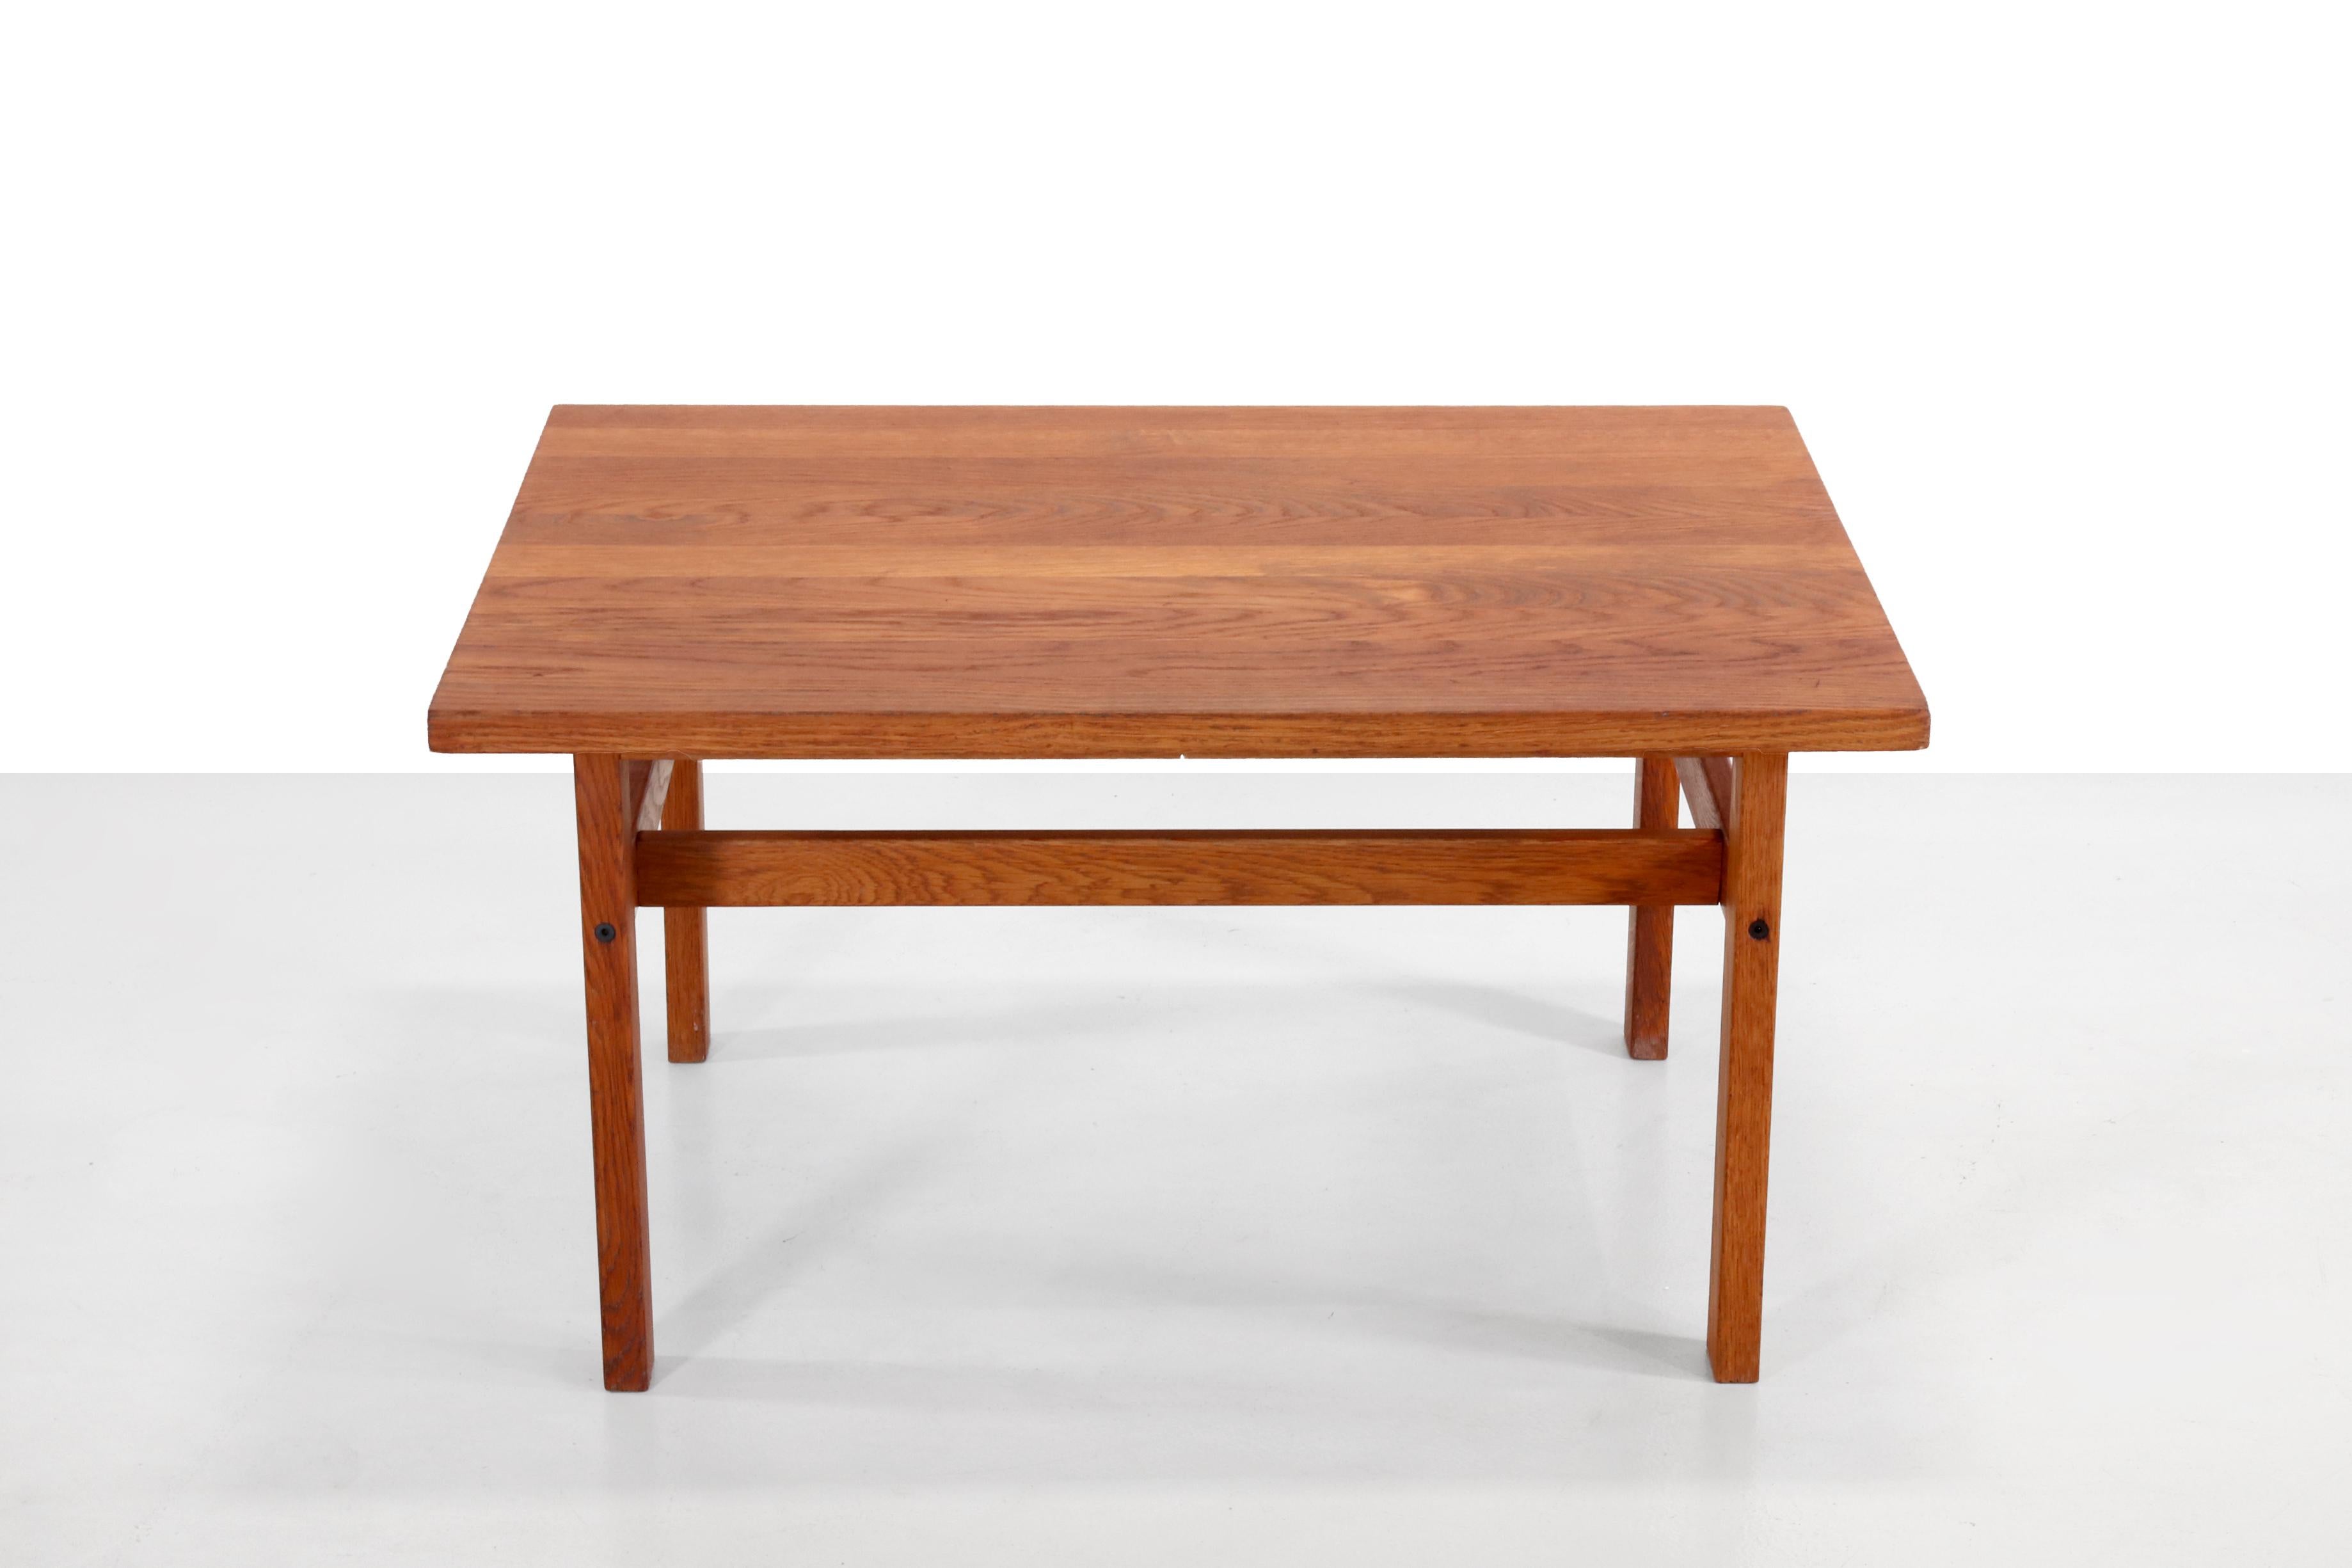 Schöner massiver Eichenholztisch FDB mit dänischer Möbelmarke und mit der Modellnummer 240. 
Dieser Couchtisch oder Beistelltisch im Shaker-Stil ist 85 cm breit, 64,5 cm tief und 45 cm hoch.